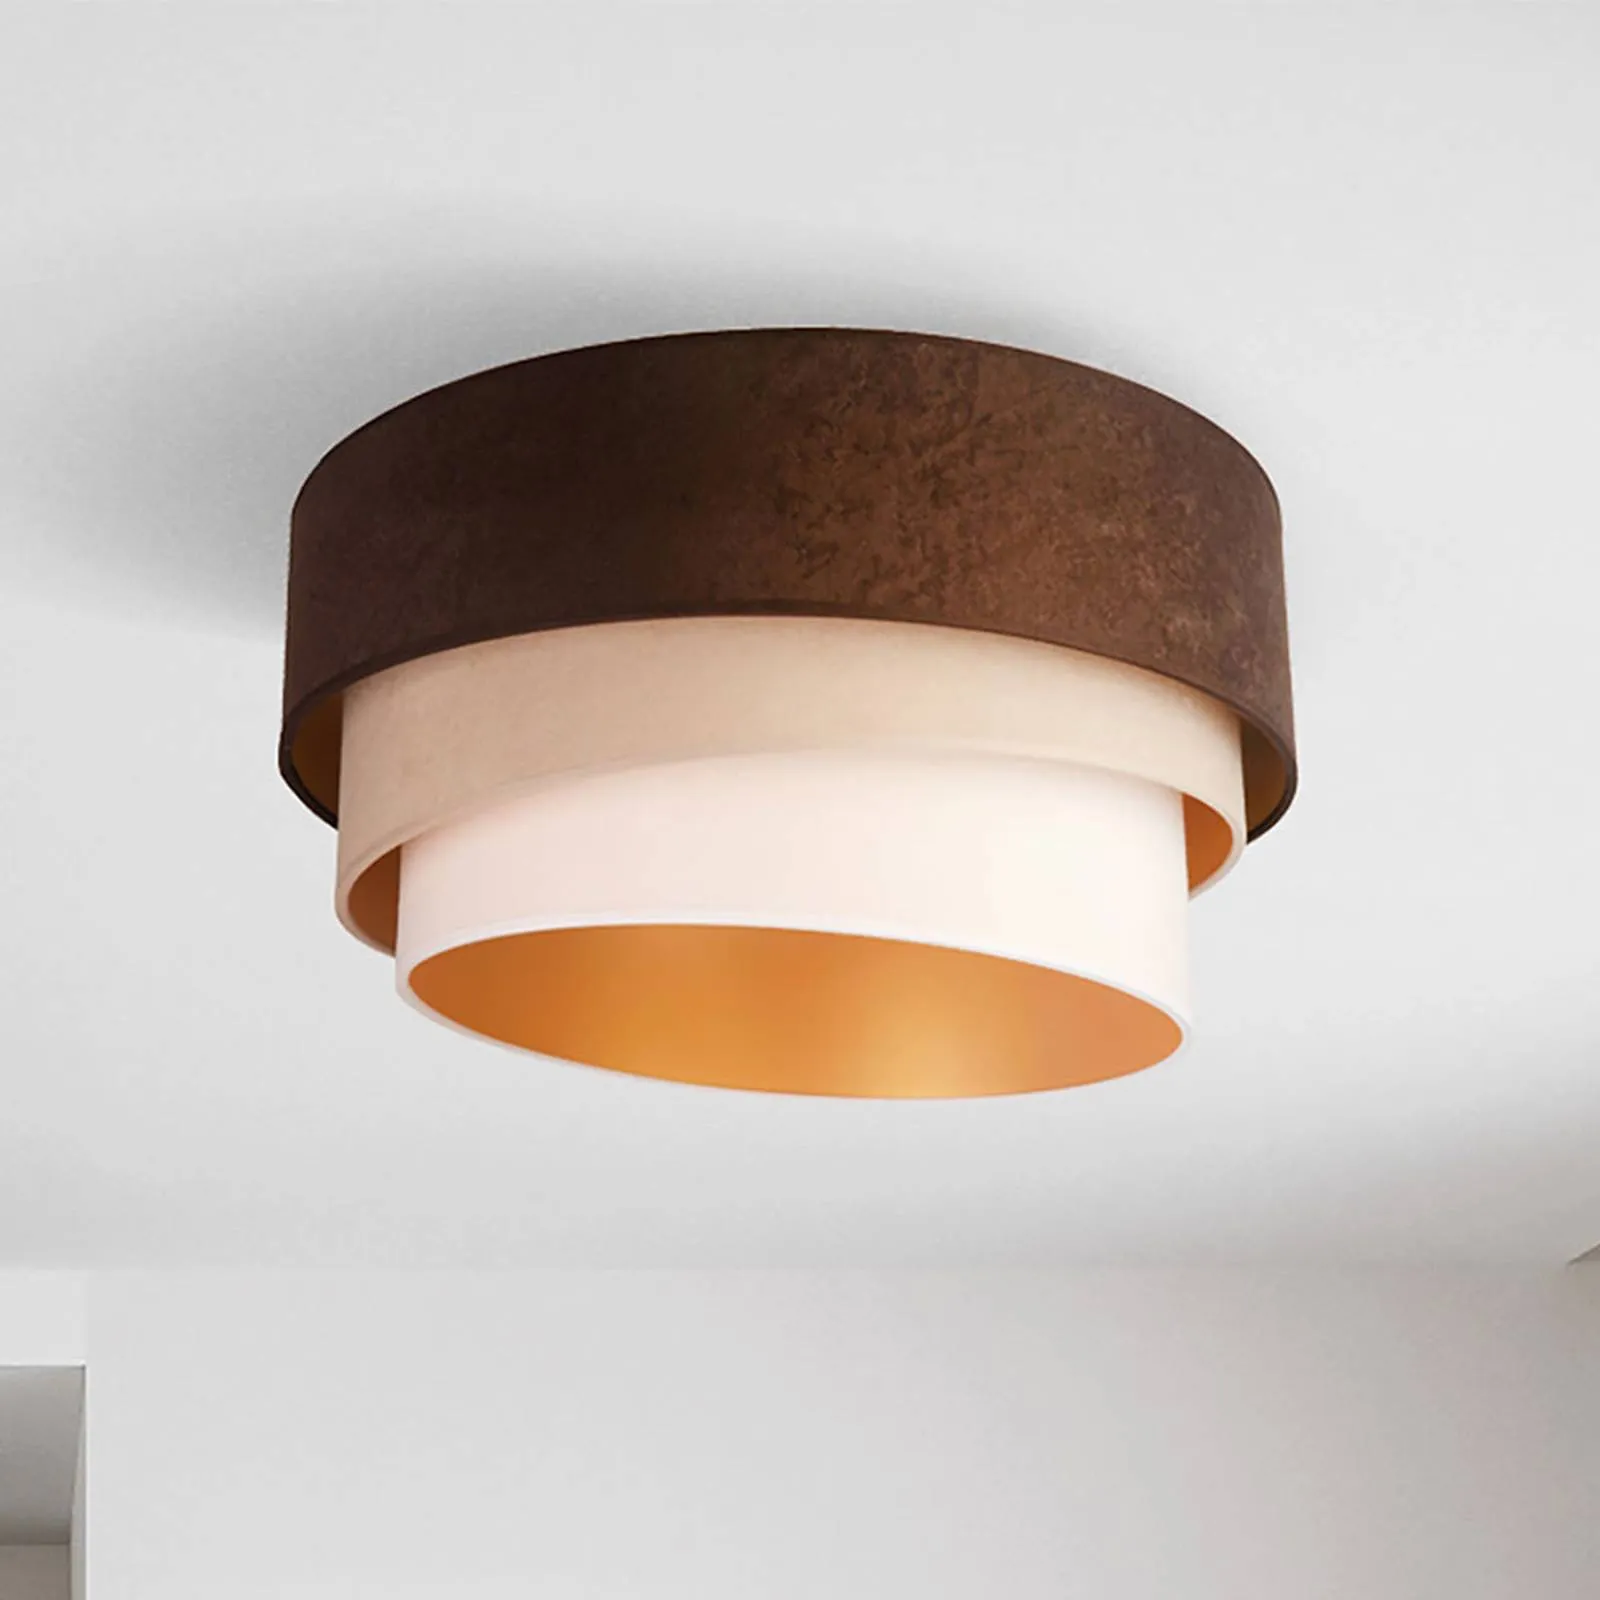 Devon ceiling light, brown/beige/ecru/gold Ø 45 cm